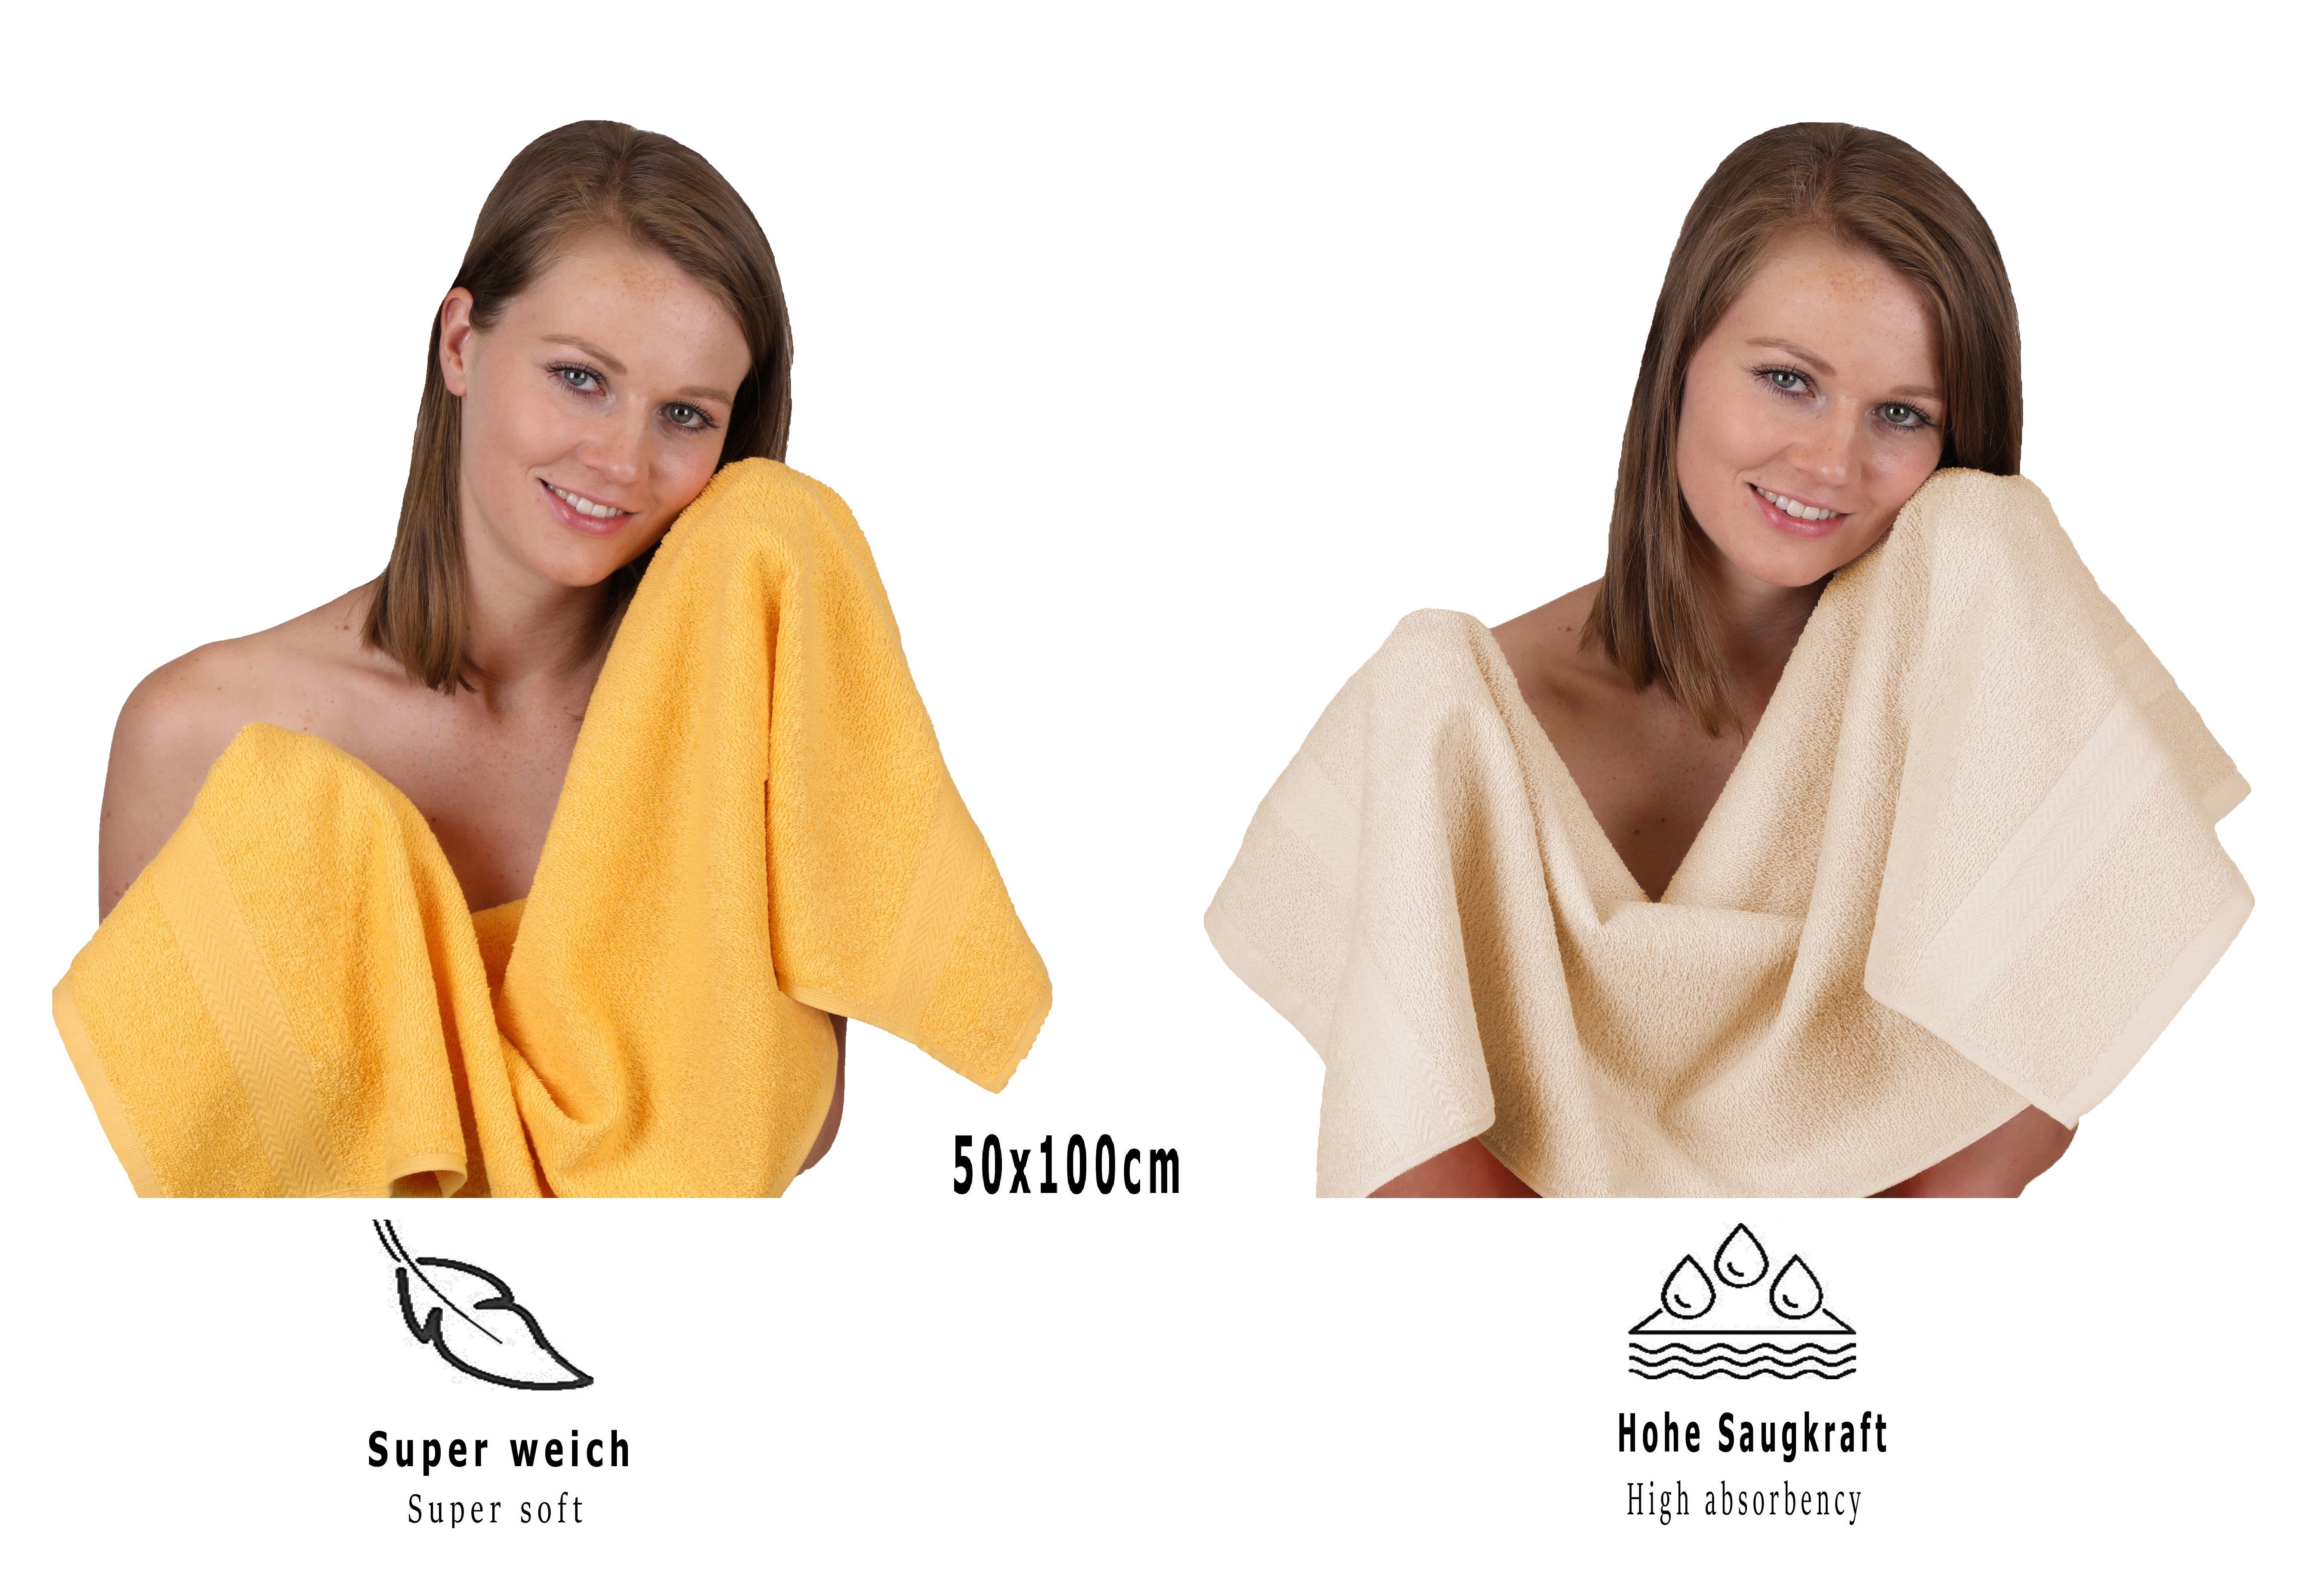 Betz Handtuch 100% Handtuch Set 12-tlg. Set Premium (12-tlg) Baumwolle, Farbe honiggelb/Sand